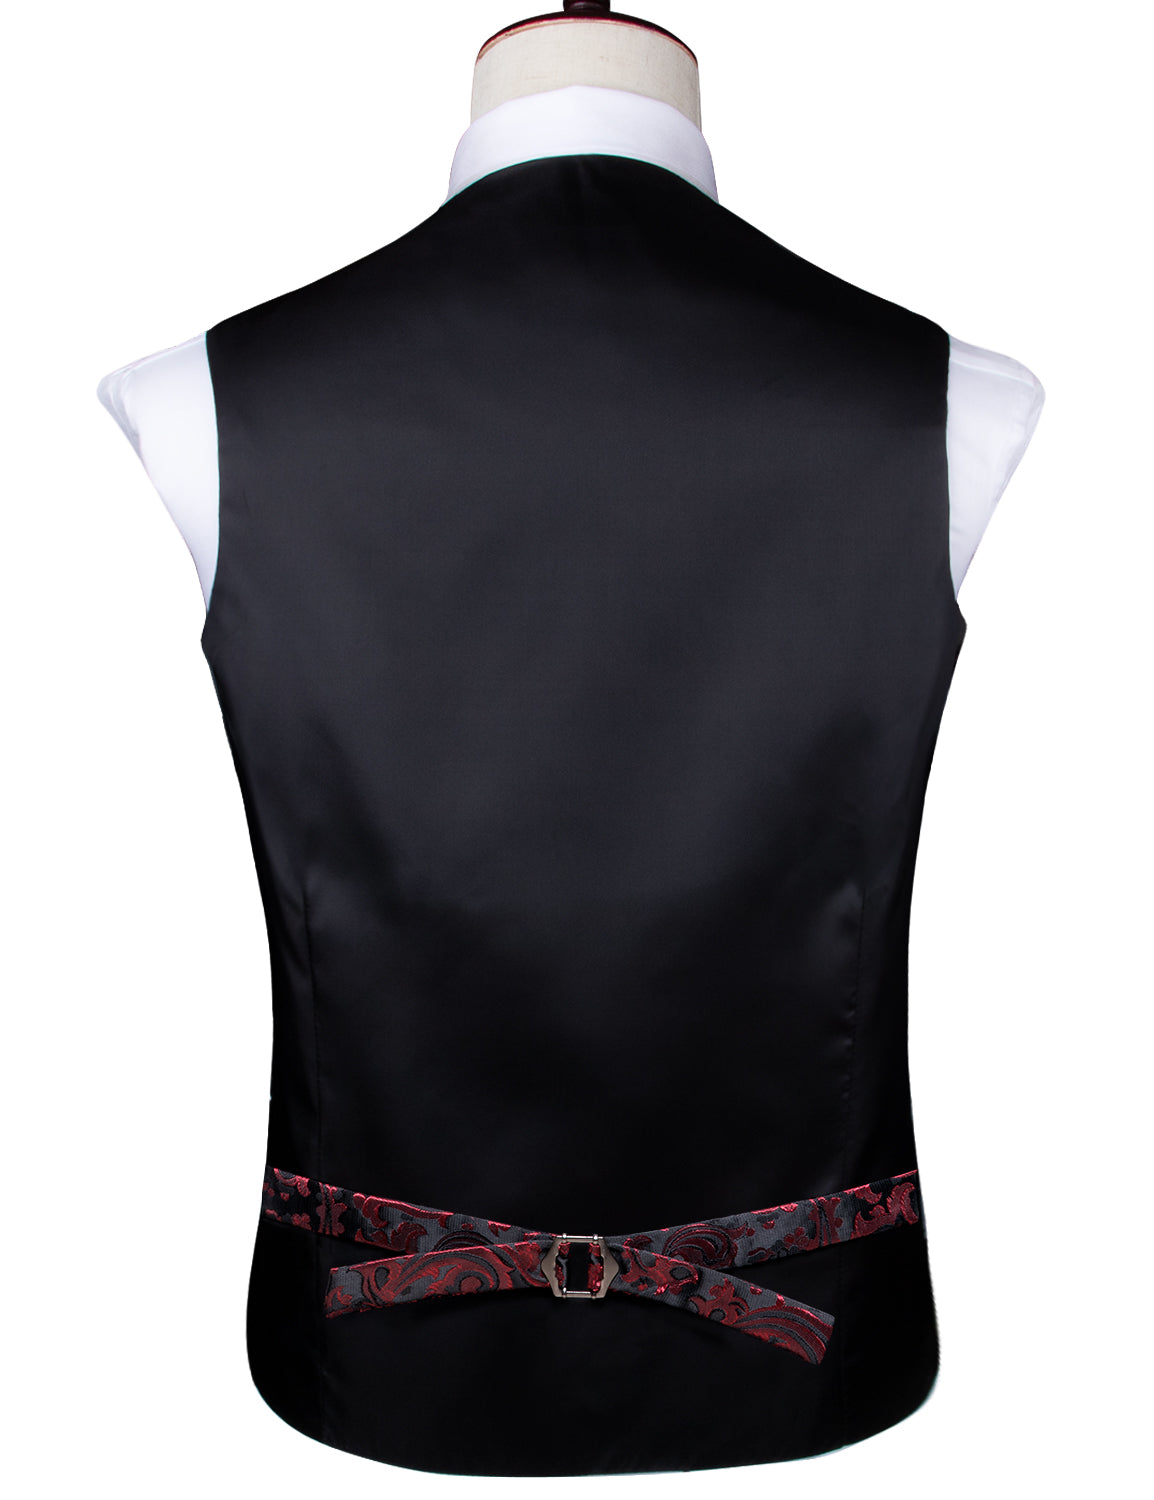 Red Black Paisley Silk Men's Vest Hanky Cufflinks Tie Set Waistcoat Suit Set